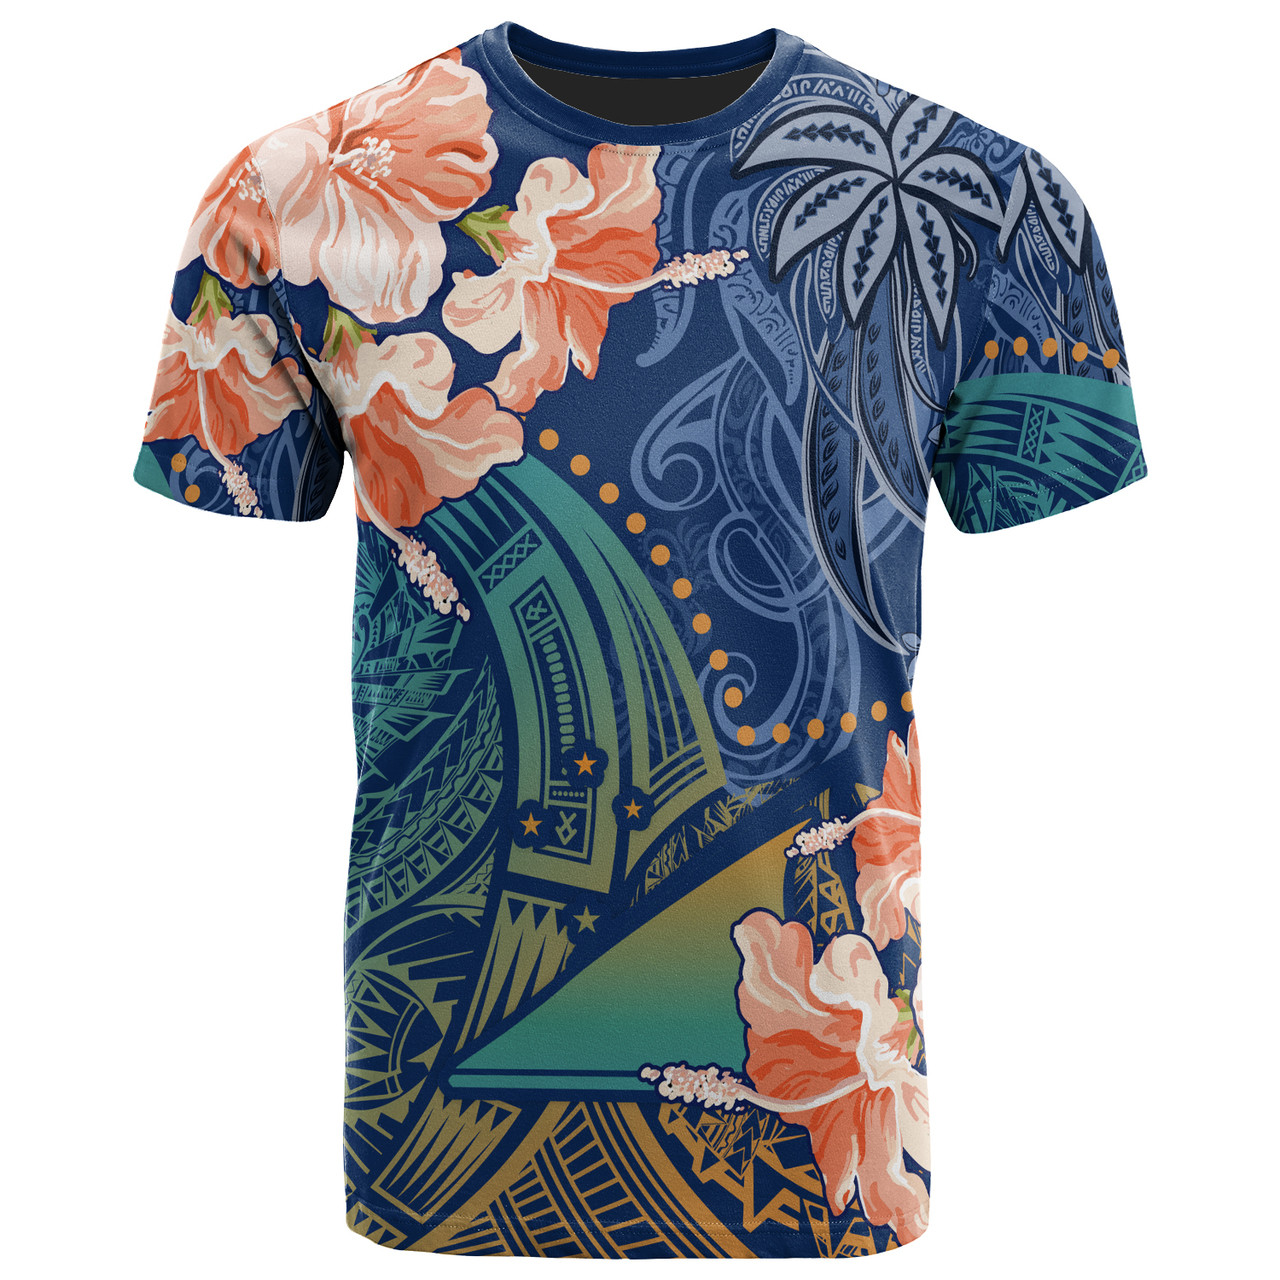 Tokelau Polynesian T-shirt - Custom Polynesian Vibes